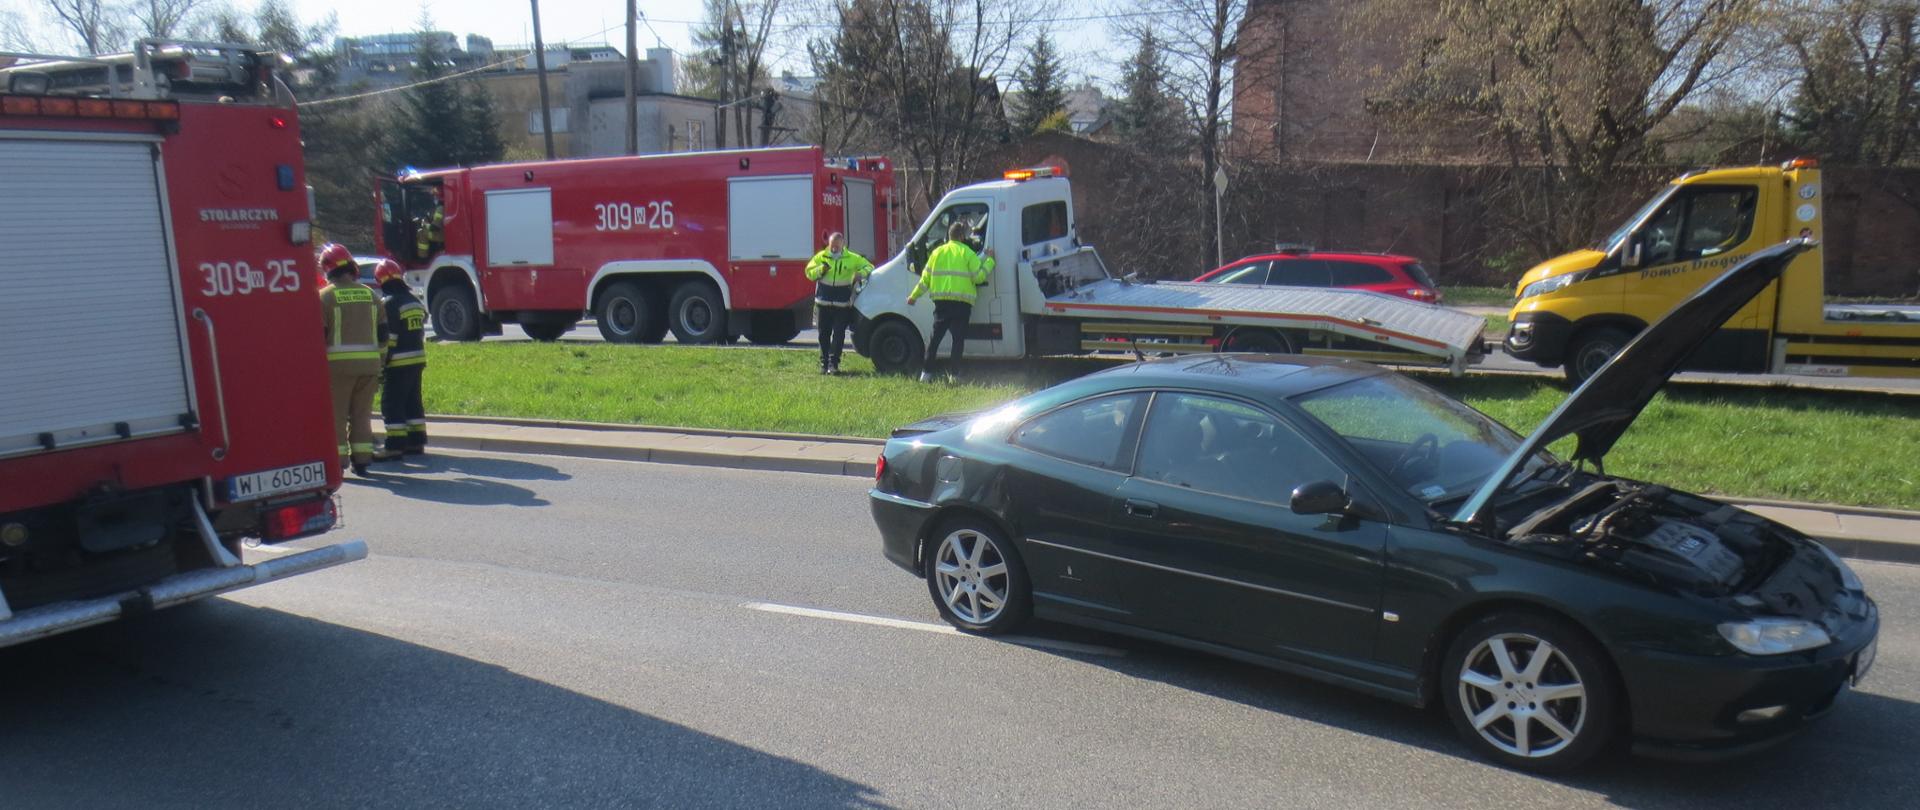 Na zdjęciu widoczne są dwa pojazdy pożarnicze, uszkodzony samochód osobowy oraz w dalszym planie dwie lawety pomocy drogowej